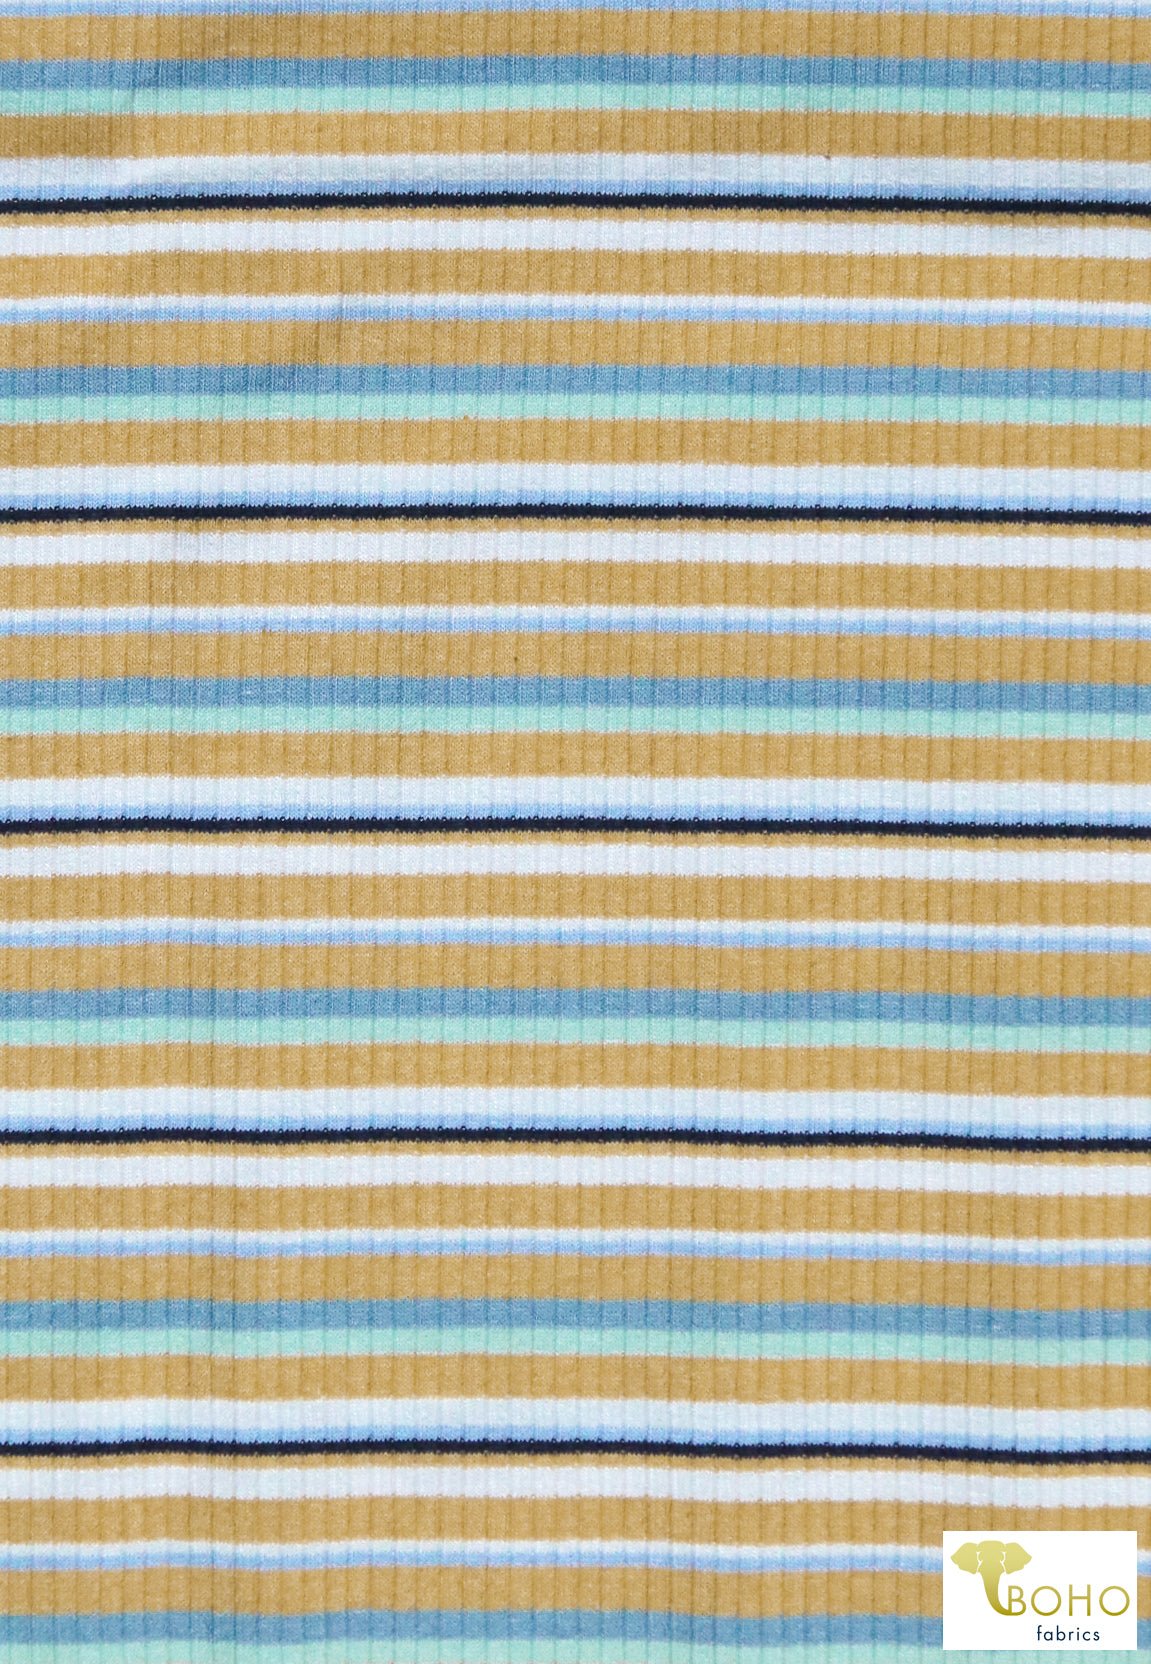 Last Cuts! Sunshine Field Stripes, 4x2 Rib Knit. RIB-128 - Boho Fabrics